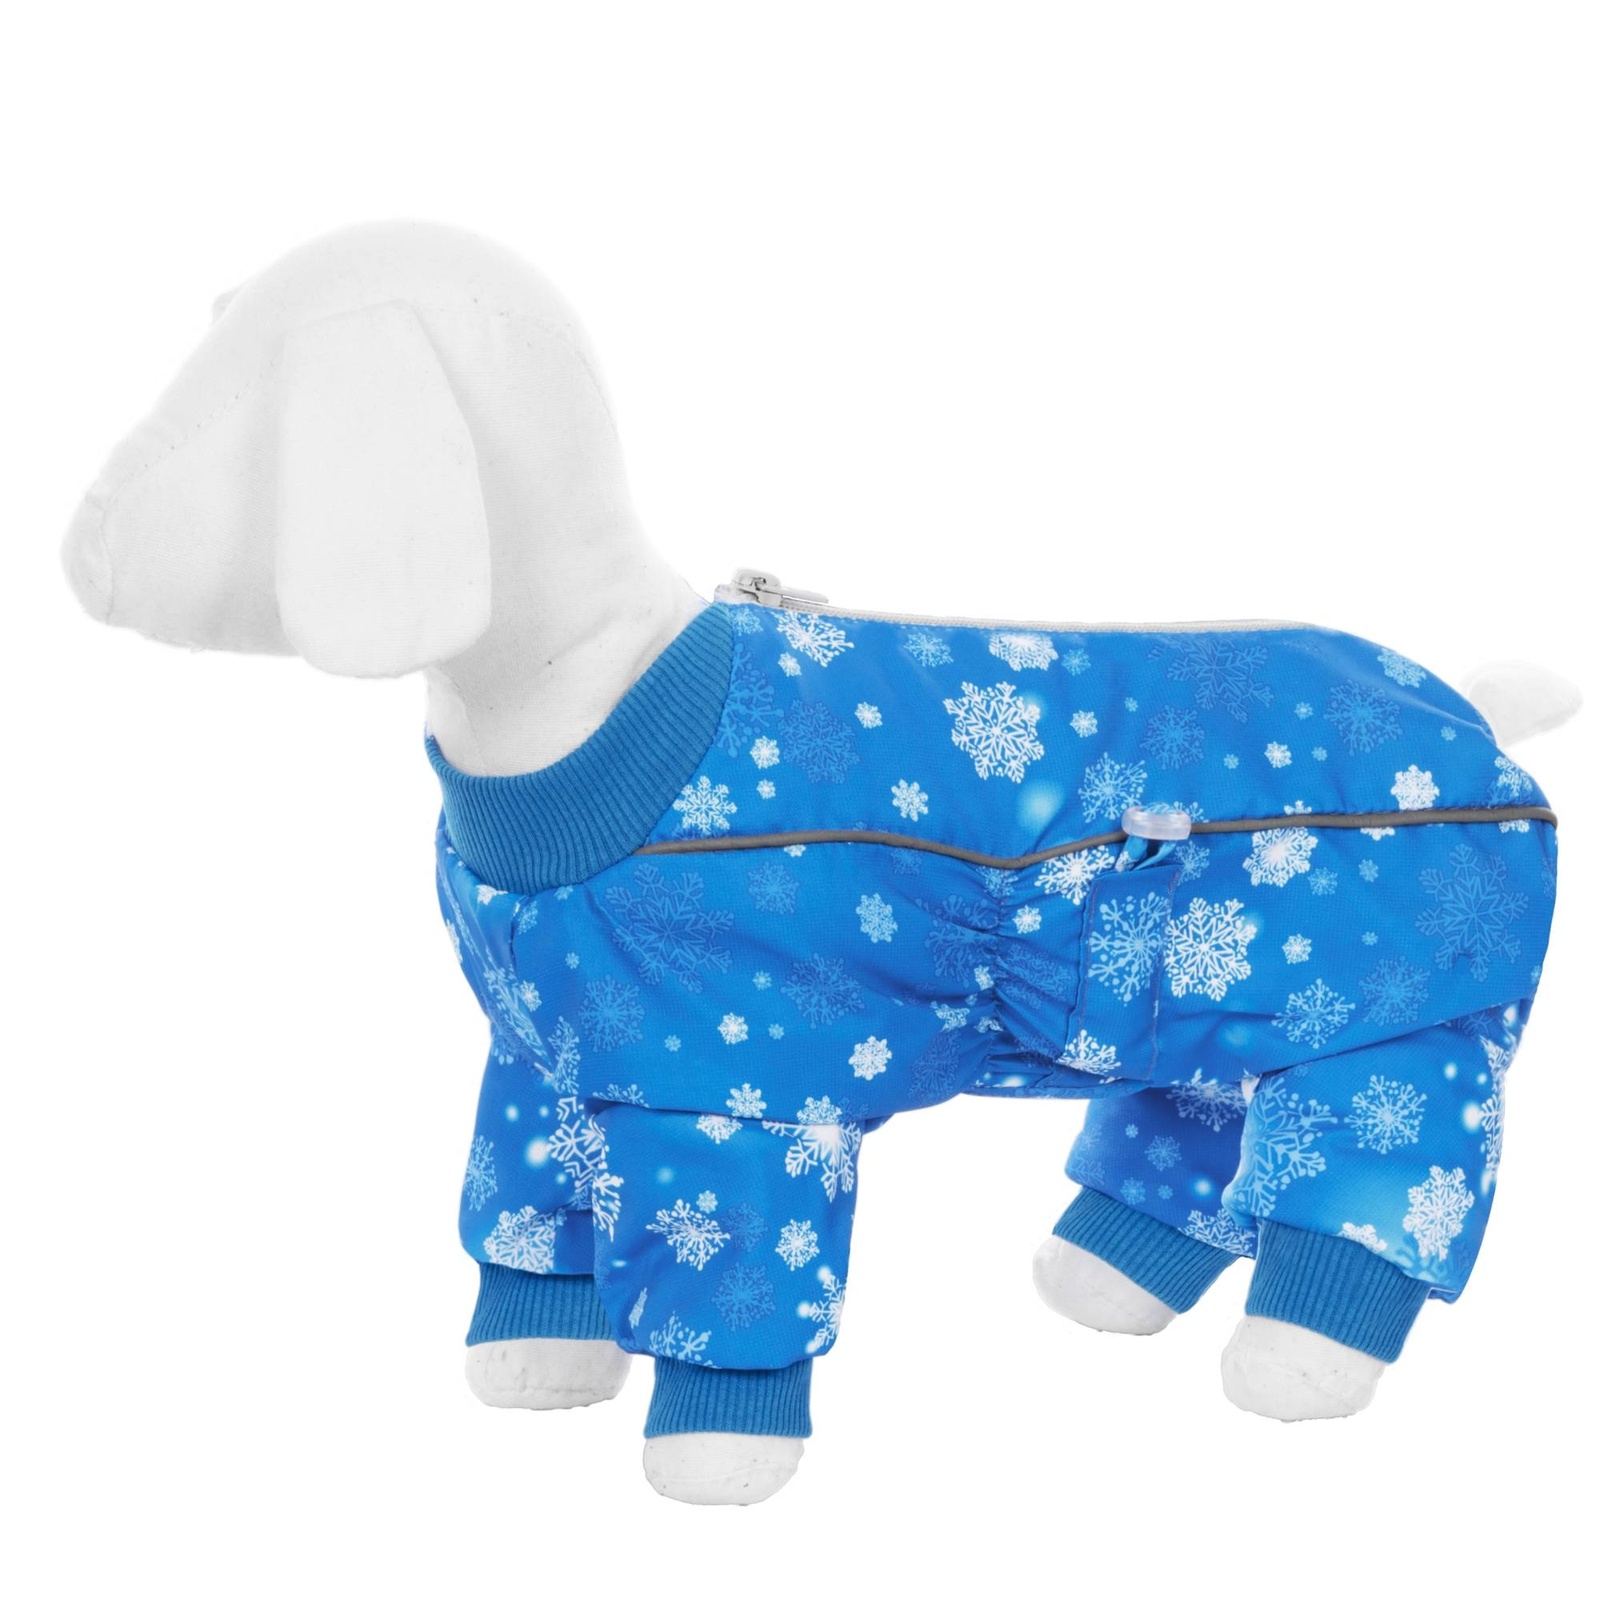 Yami-Yami одежда Yami-Yami одежда комбинезон для собак малых пород, на меху с рисунком снежинки (L) yami yami одежда yami yami одежда комбинезон для собак малых пород на меху с рисунком снежинки l